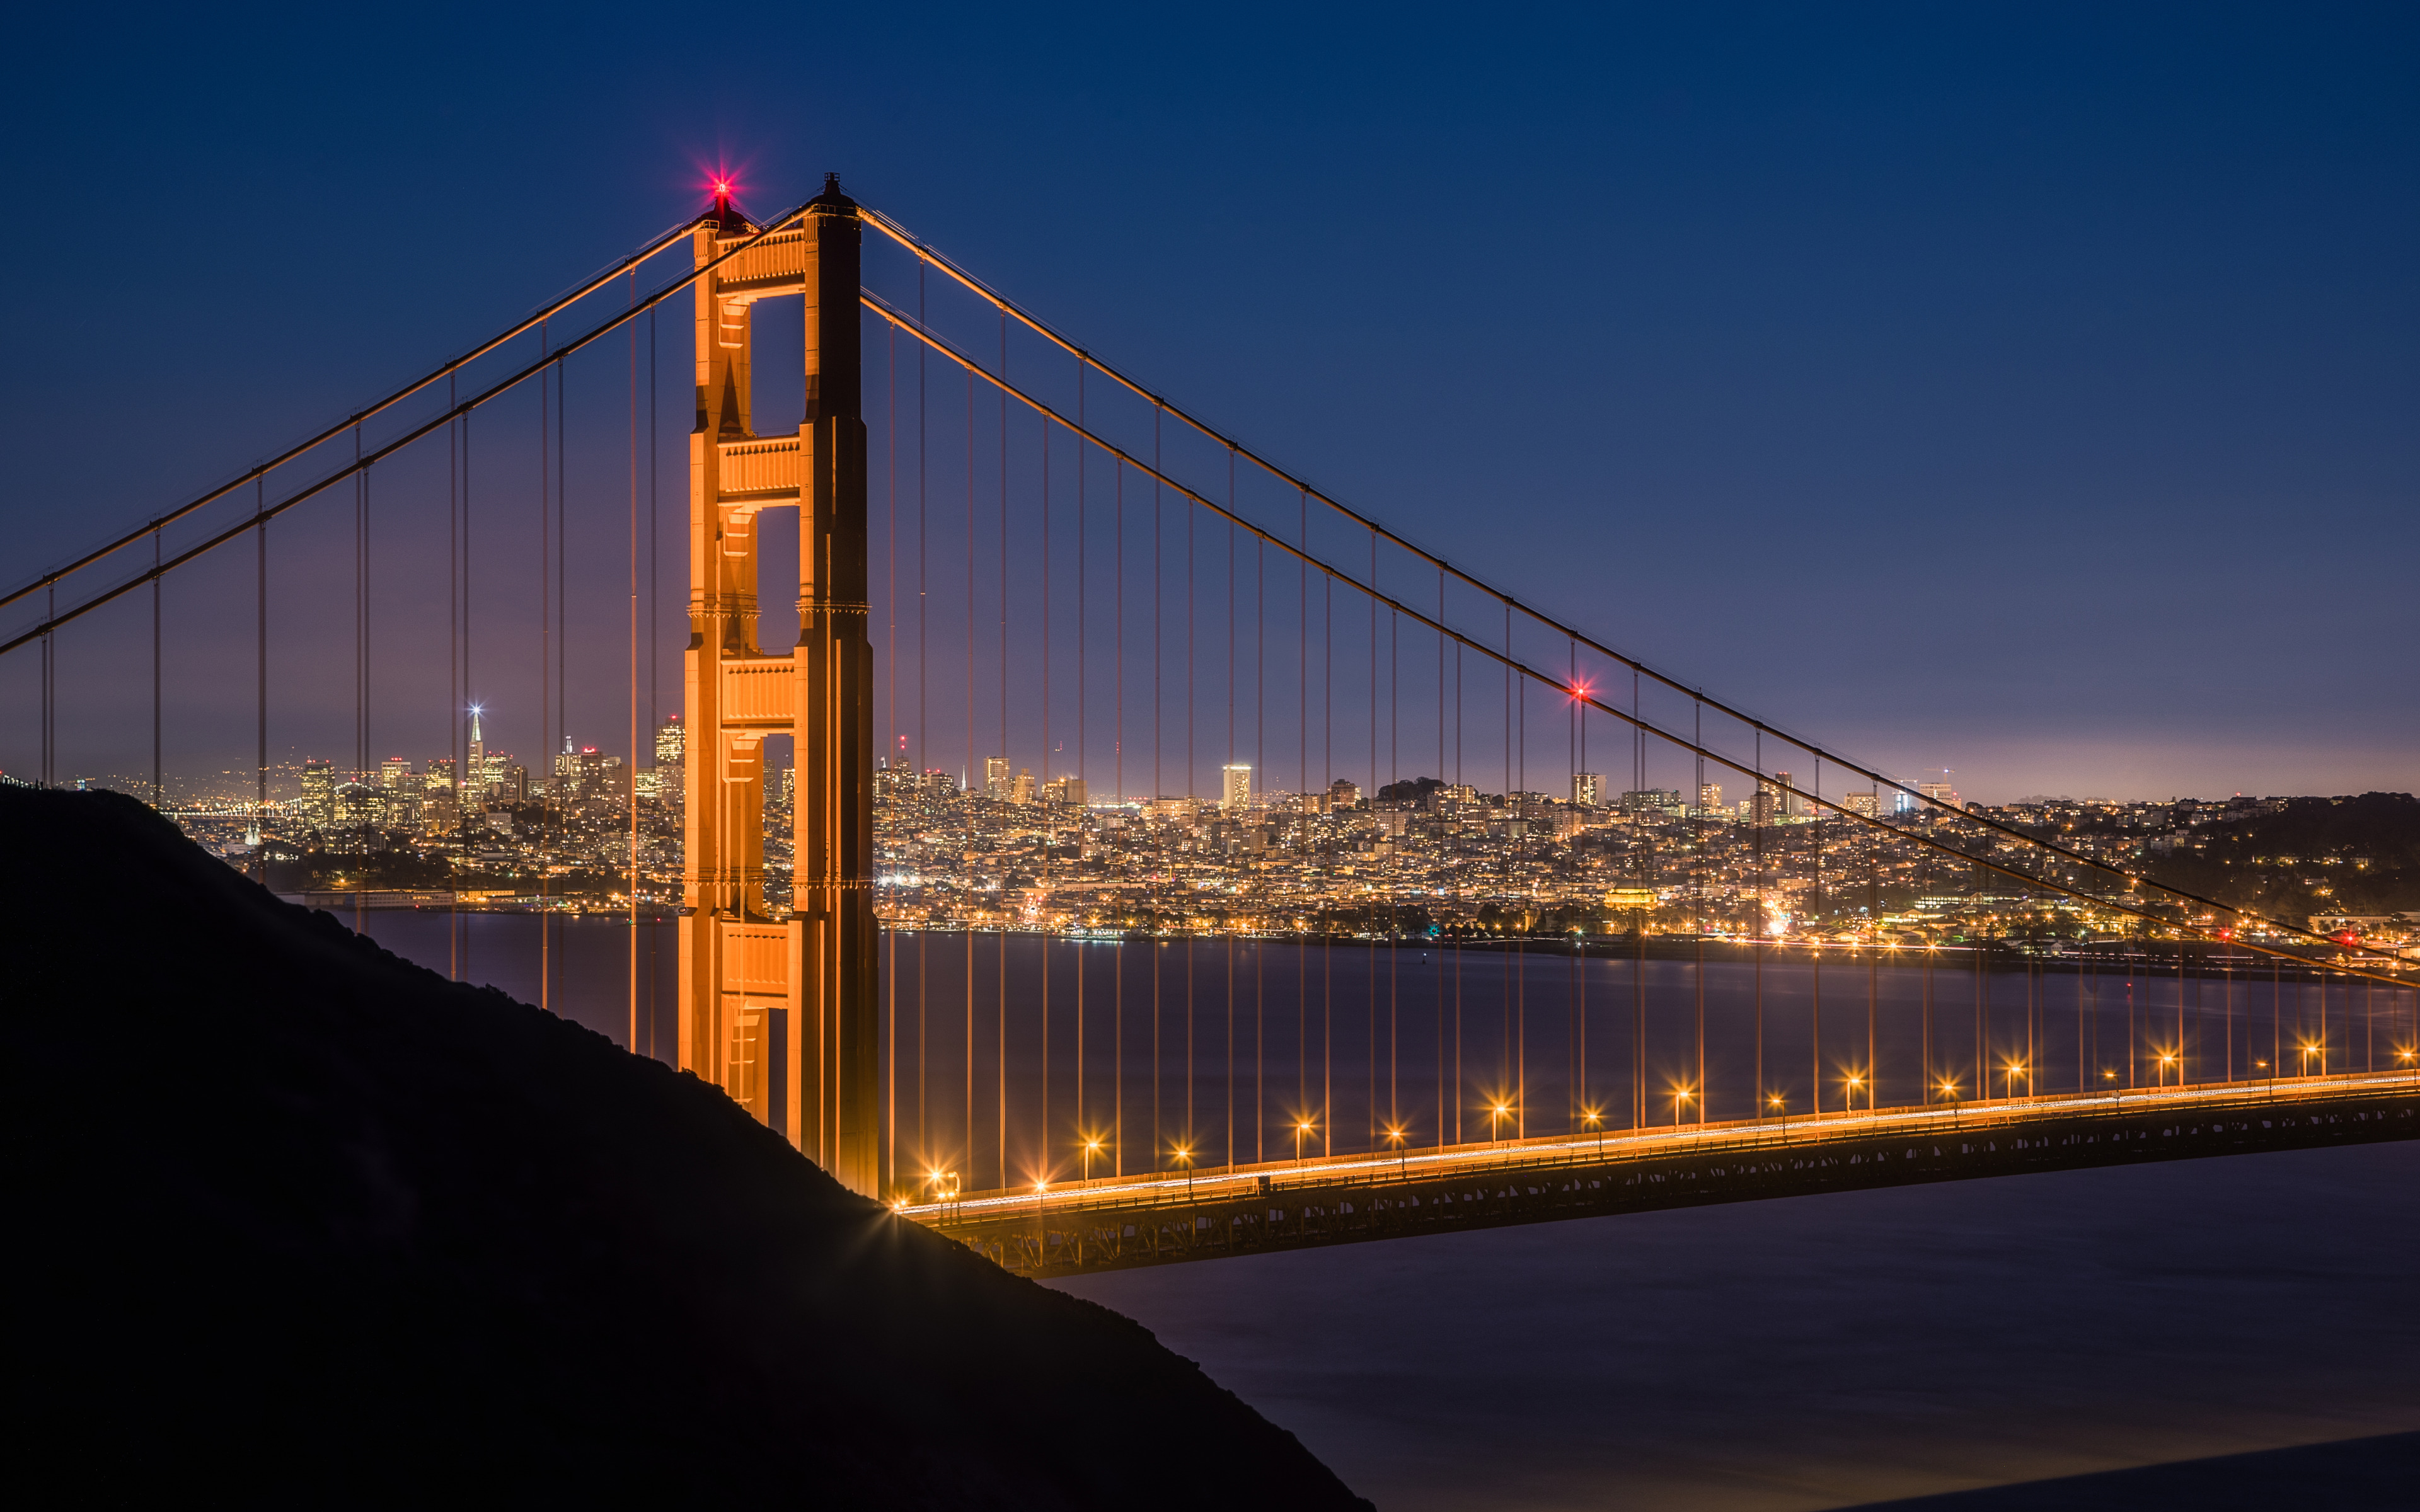 Night at the Golden Gate Bridge widescreen wallpaper. Wide